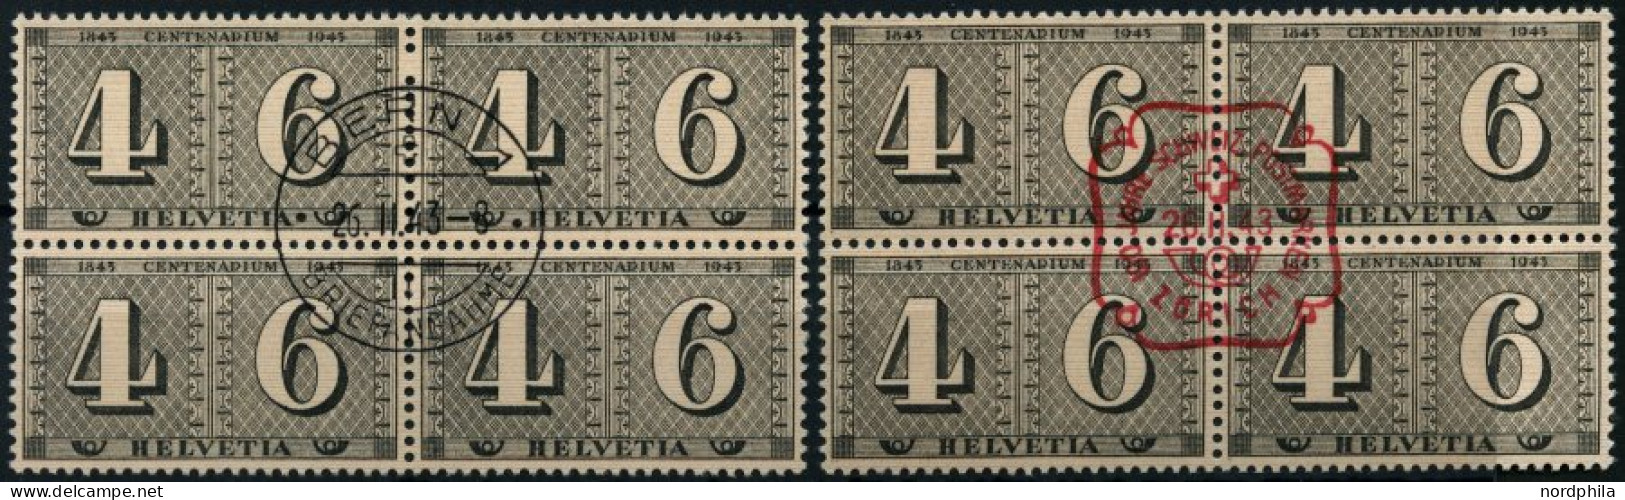 SCHWEIZ BUNDESPOST 416 VB O, 1943, 4+6 C. 100 Jahre Briefmarken, 2 Viererblocks Mit Zentrischen Ersttagsstempeln (in Rot - Gebraucht